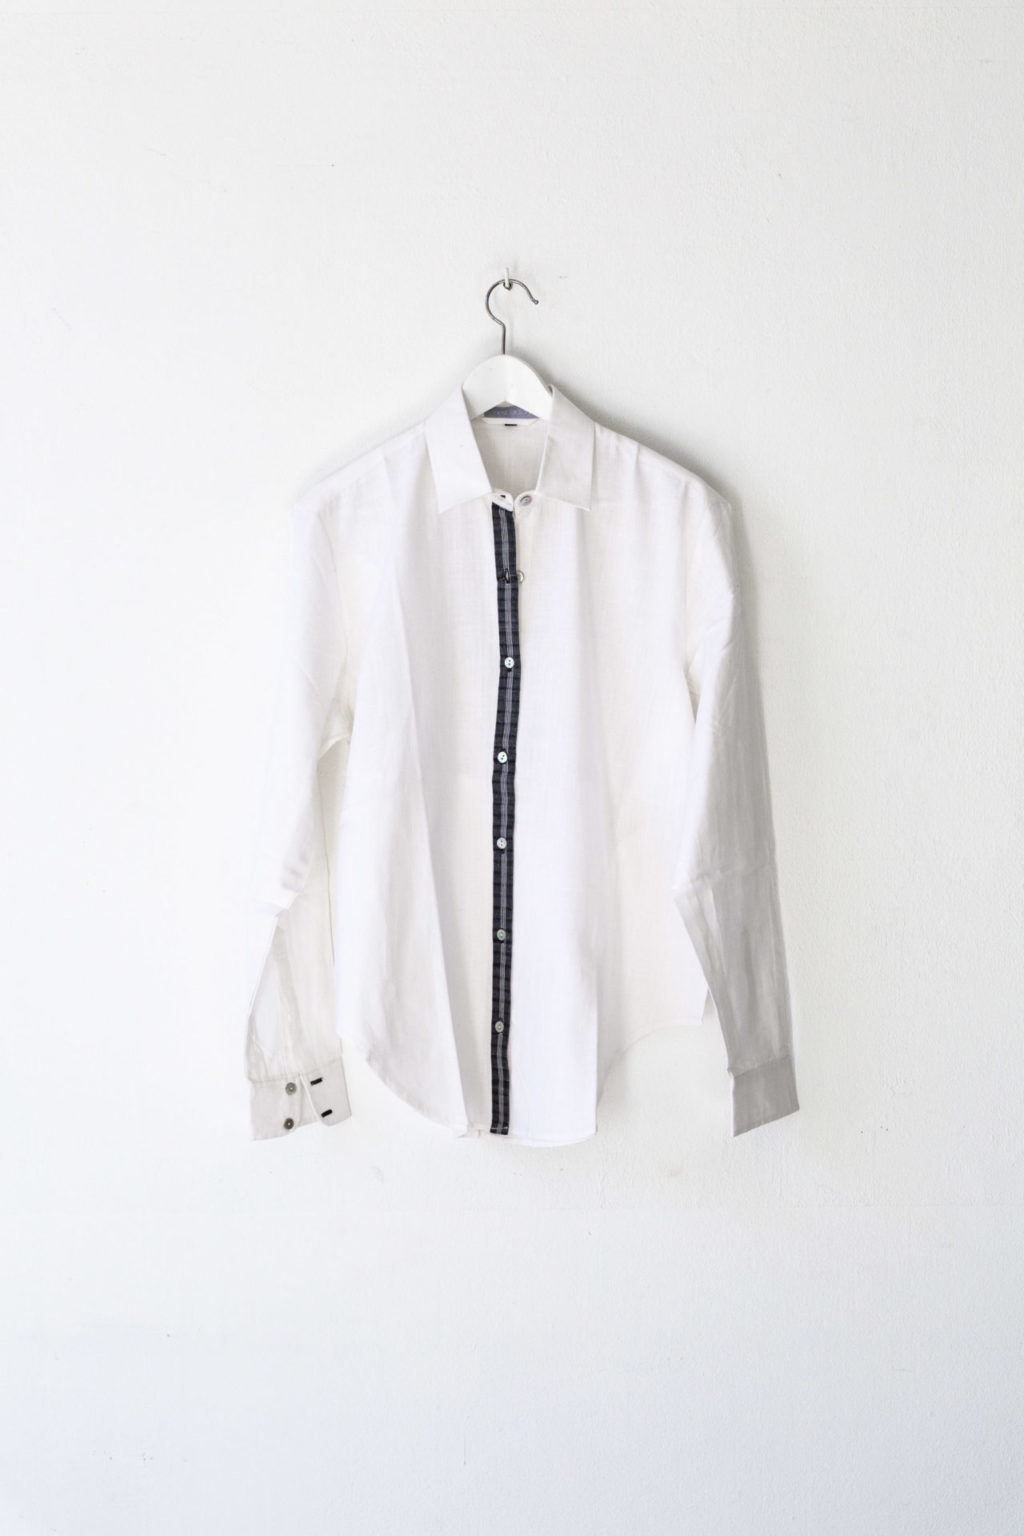 Boyfriend blouse handwoven cotton